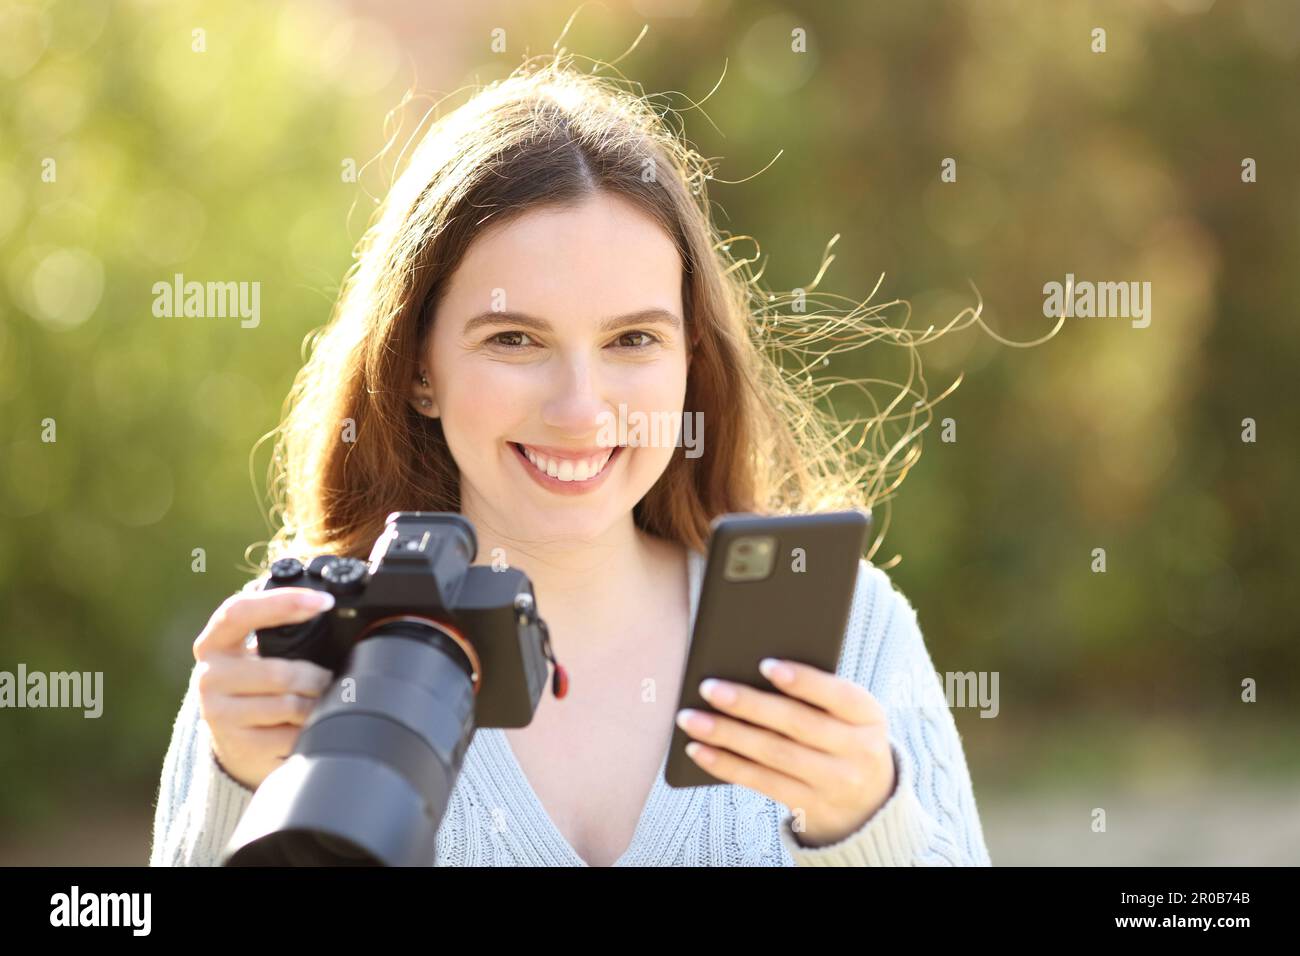 Ein glücklicher Fotograf sieht dich an, wie du Handy und spiegellose Kamera in einem Park hältst Stockfoto